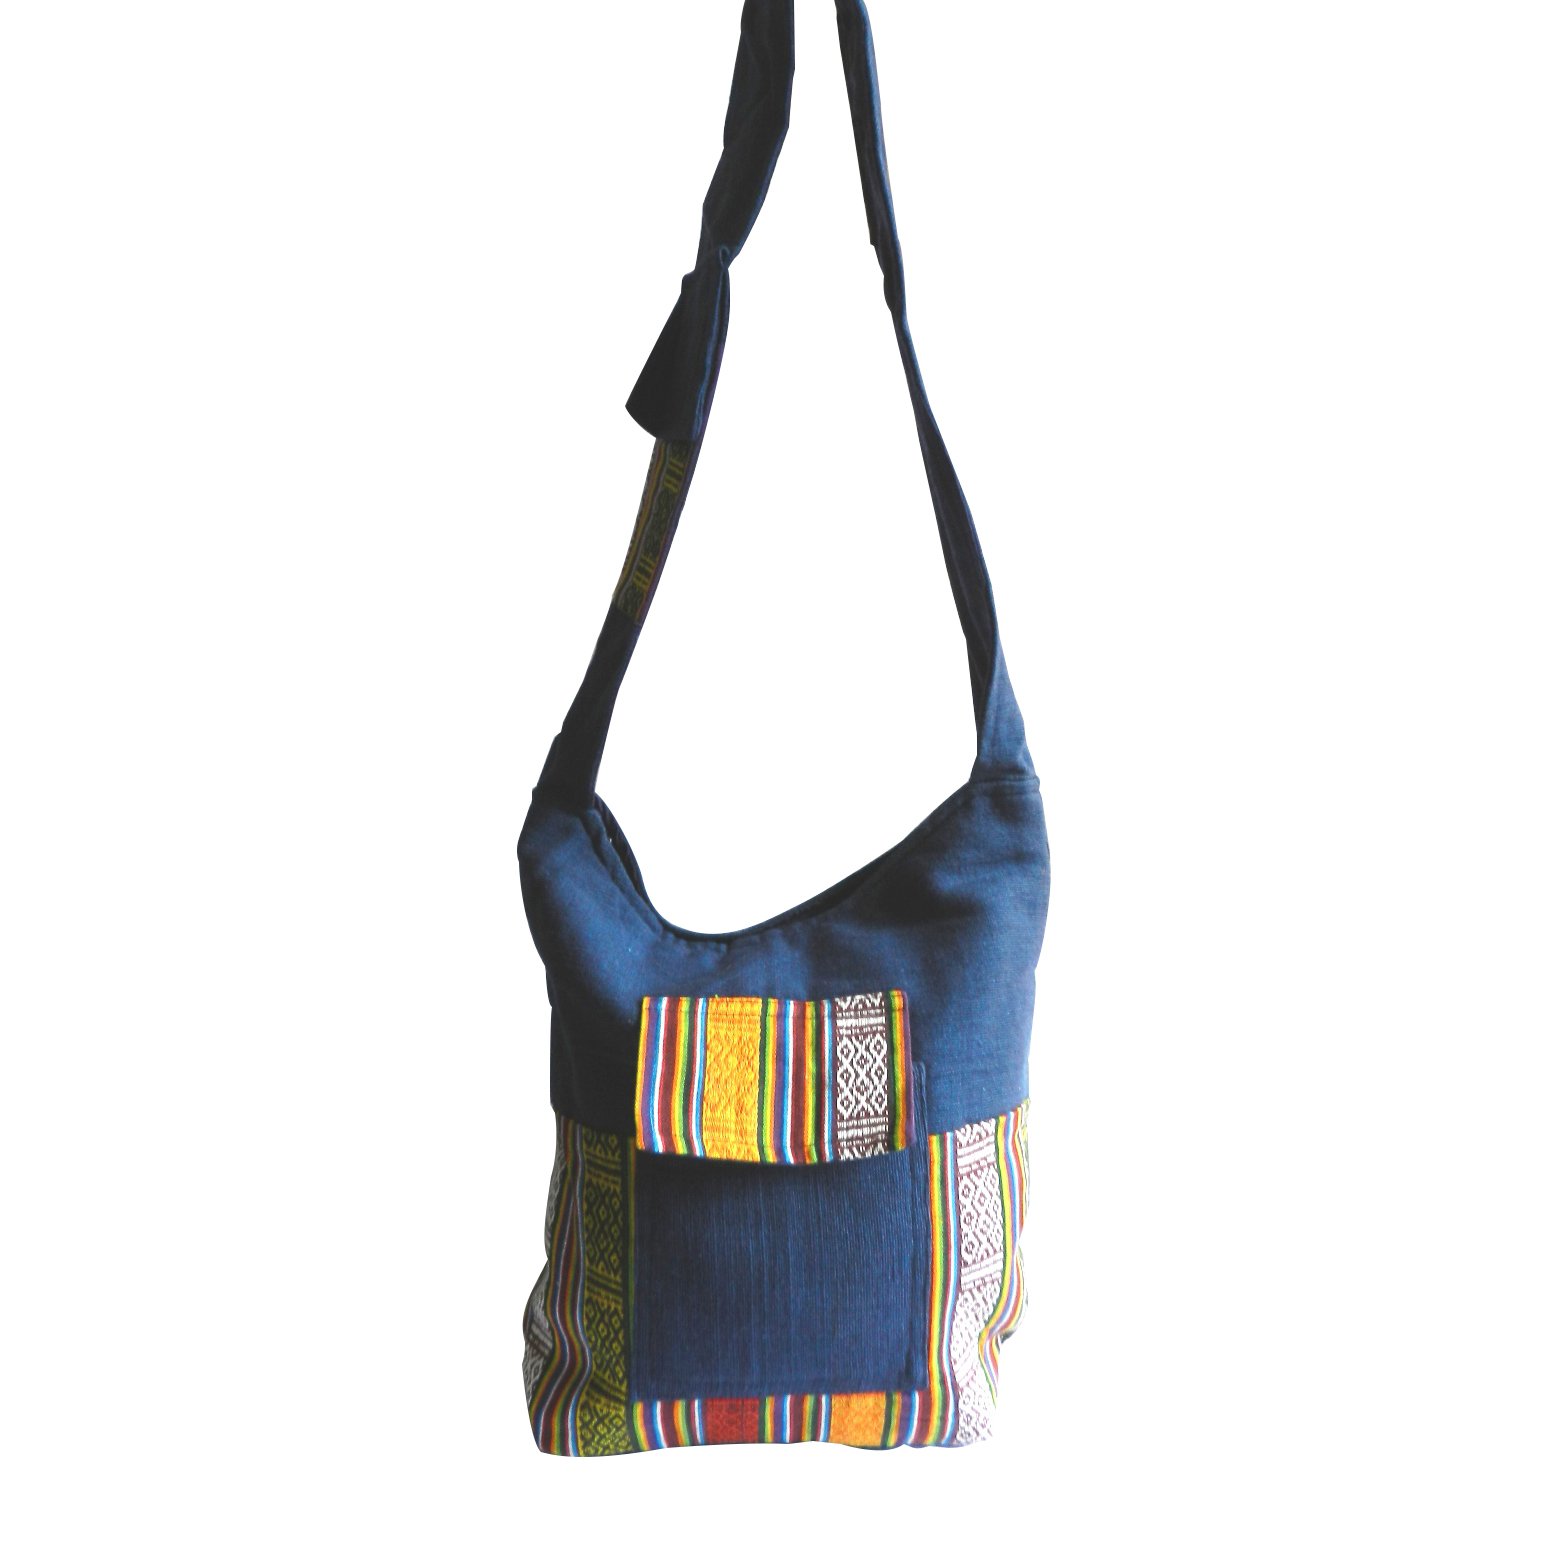 Patchwork Bag quilted Shoulder Tote, Market, Project Bag,tote Bag Pattern Patchwork  Handbag, Boho Hippie Purse, Embroidered Mirror Work Bag - Etsy | Patchwork  bags, Tote bag pattern, Hippie purse